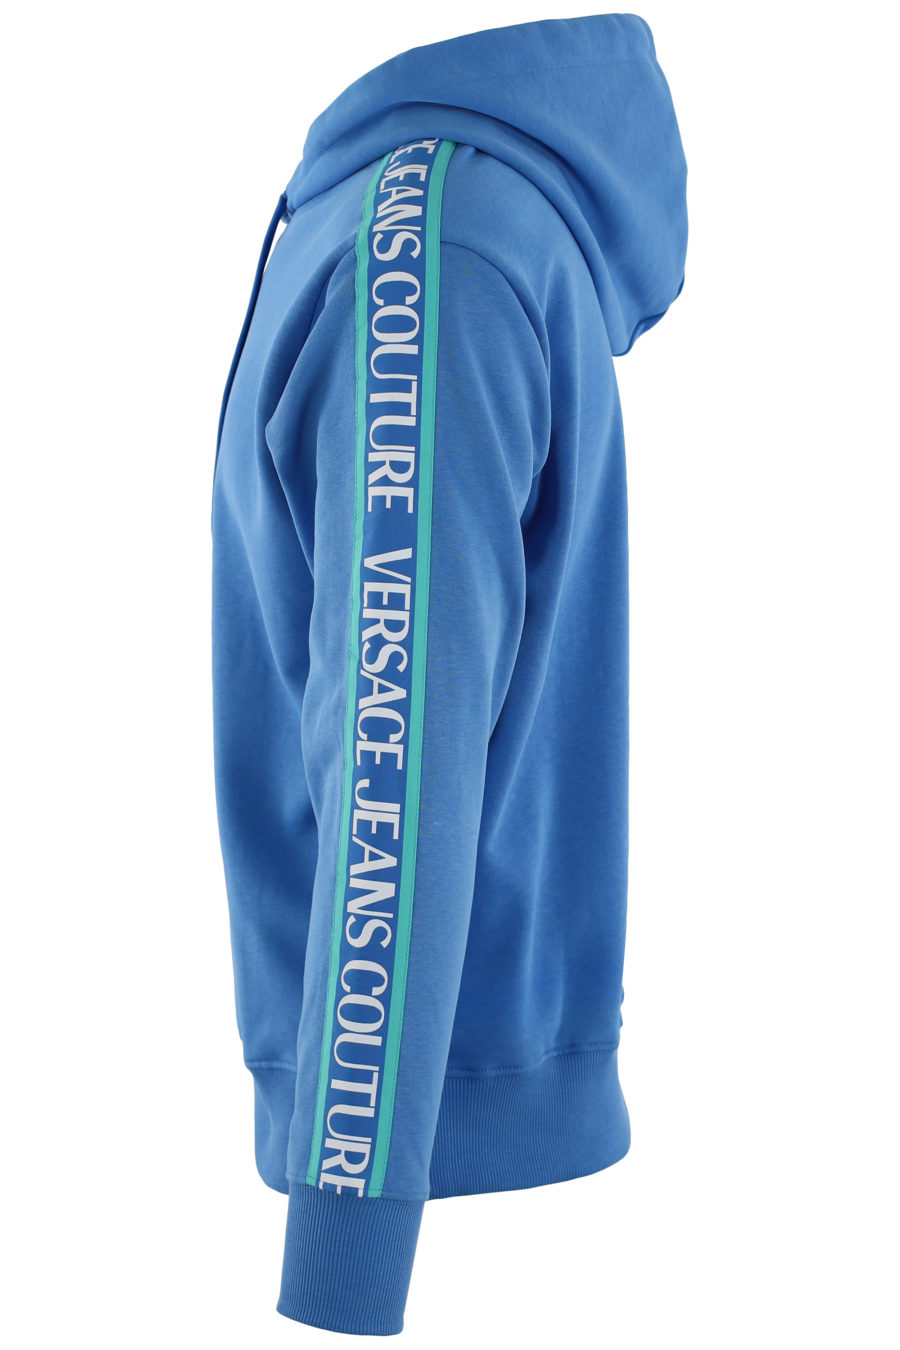 Camisola azul com capuz e fita azul com logótipo - IMG 0455